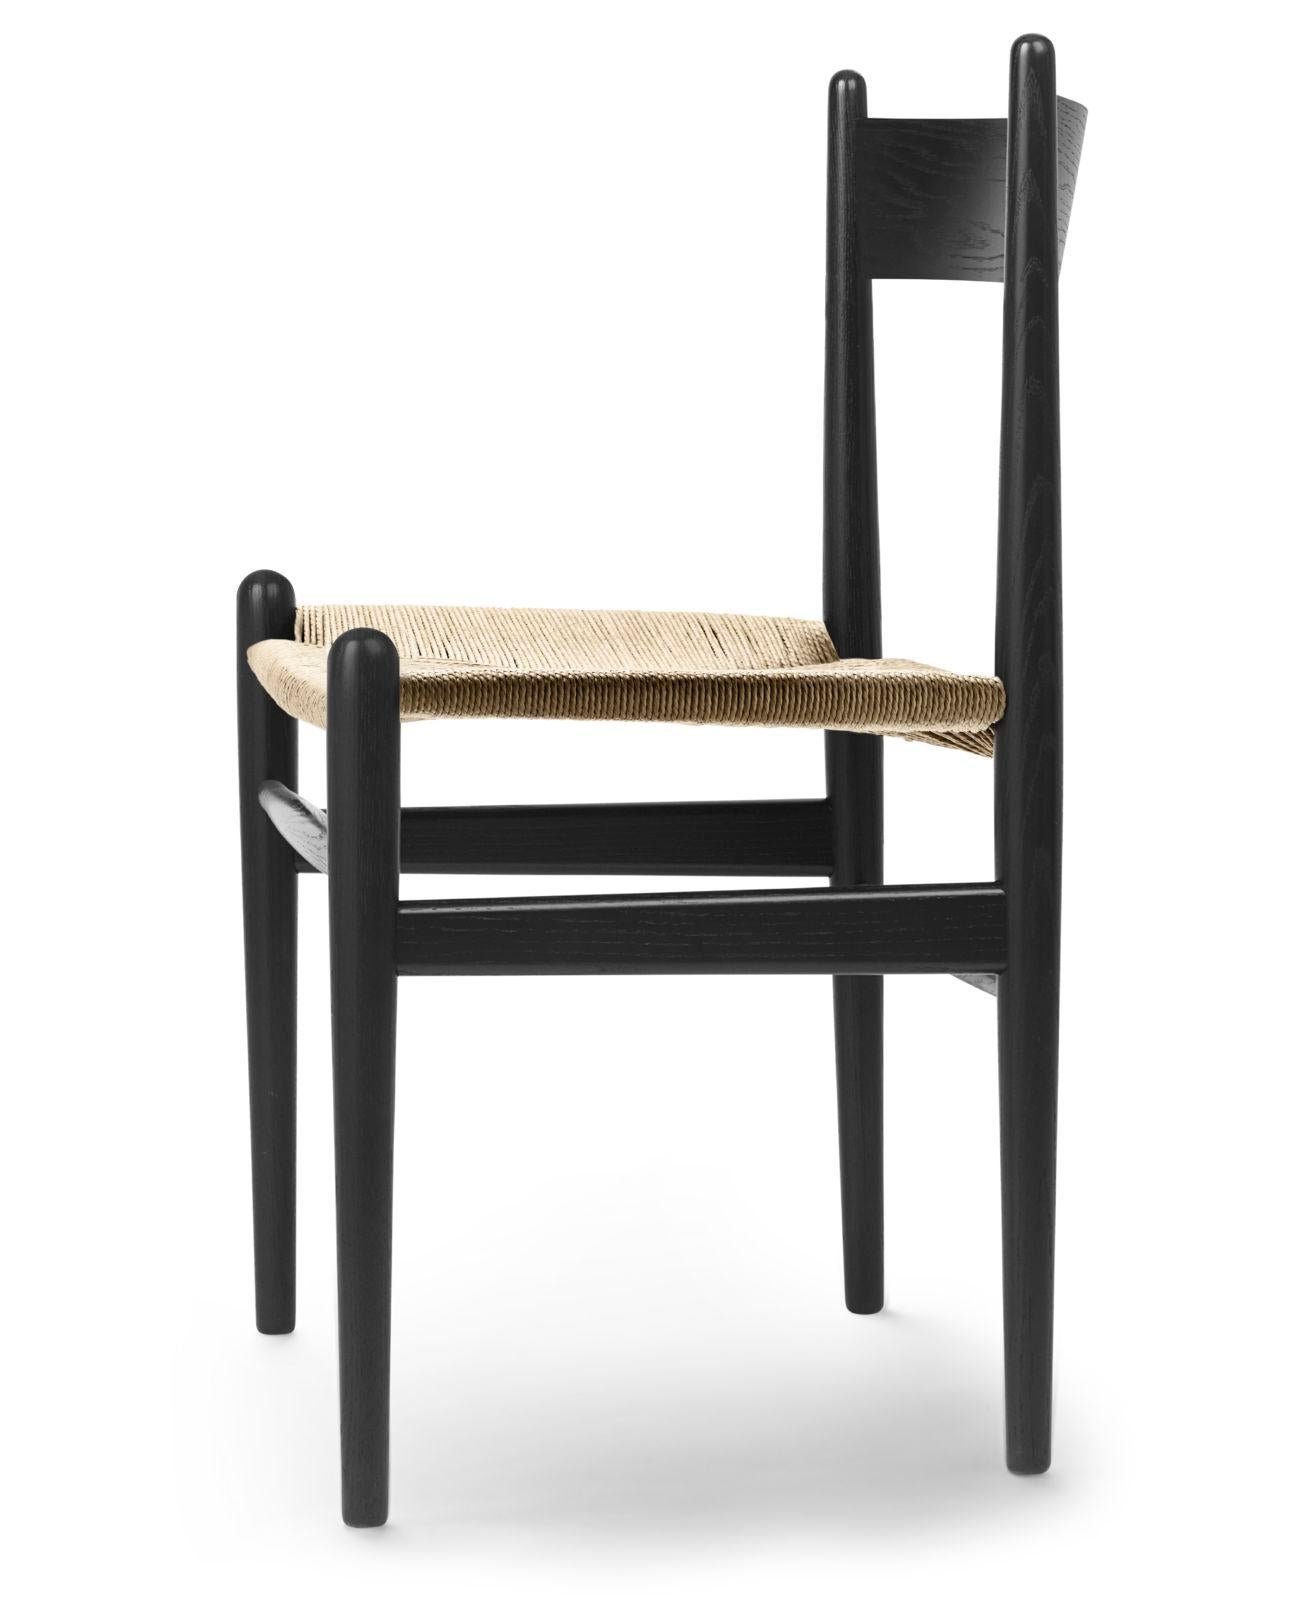 La chaise de salle à manger CH36 de Hans J. Wegner témoigne d'un savoir-faire artisanal et d'un souci du détail. La chaise 1962, simple et épurée, est aussi confortable qu'elle est belle à regarder.